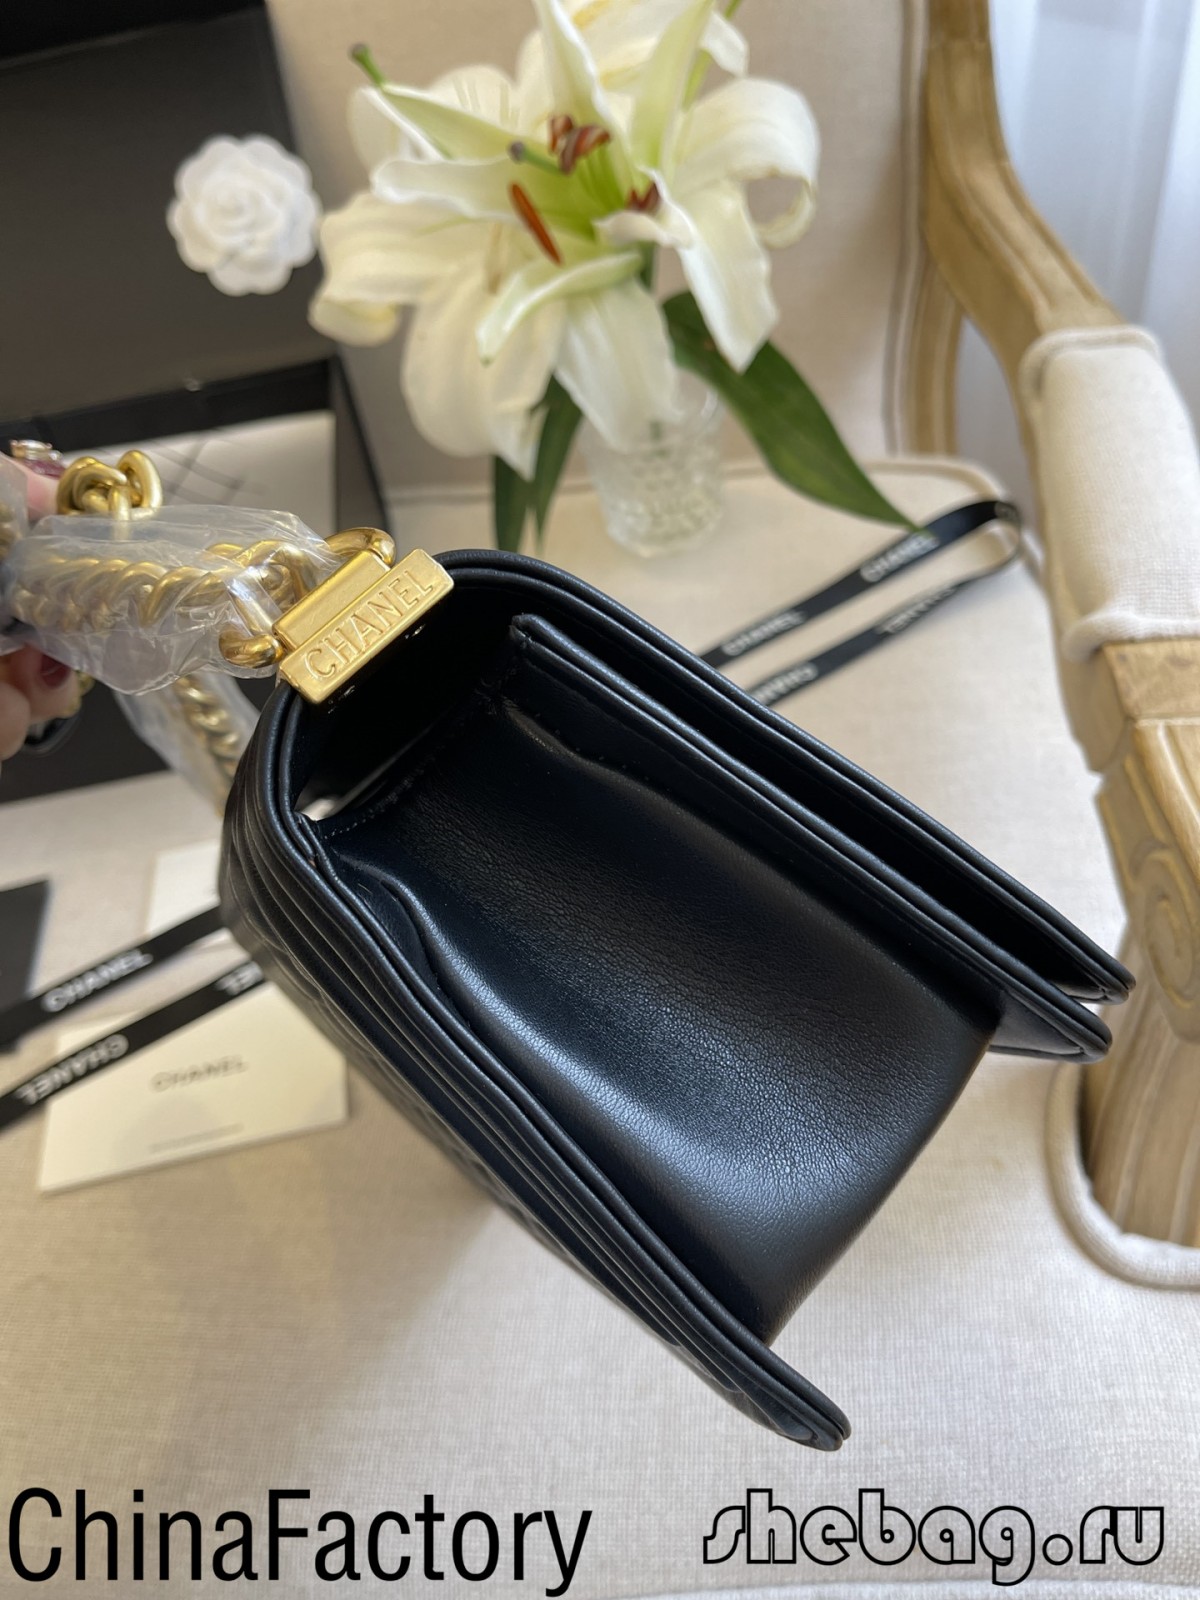 Fontes de réplicas de bolsas Chanel de mellor calidade 2.55 en China (actualizadas en 2022) - Tenda en liña de bolsas Louis Vuitton falsas de mellor calidade, réplica de bolsas de deseño ru